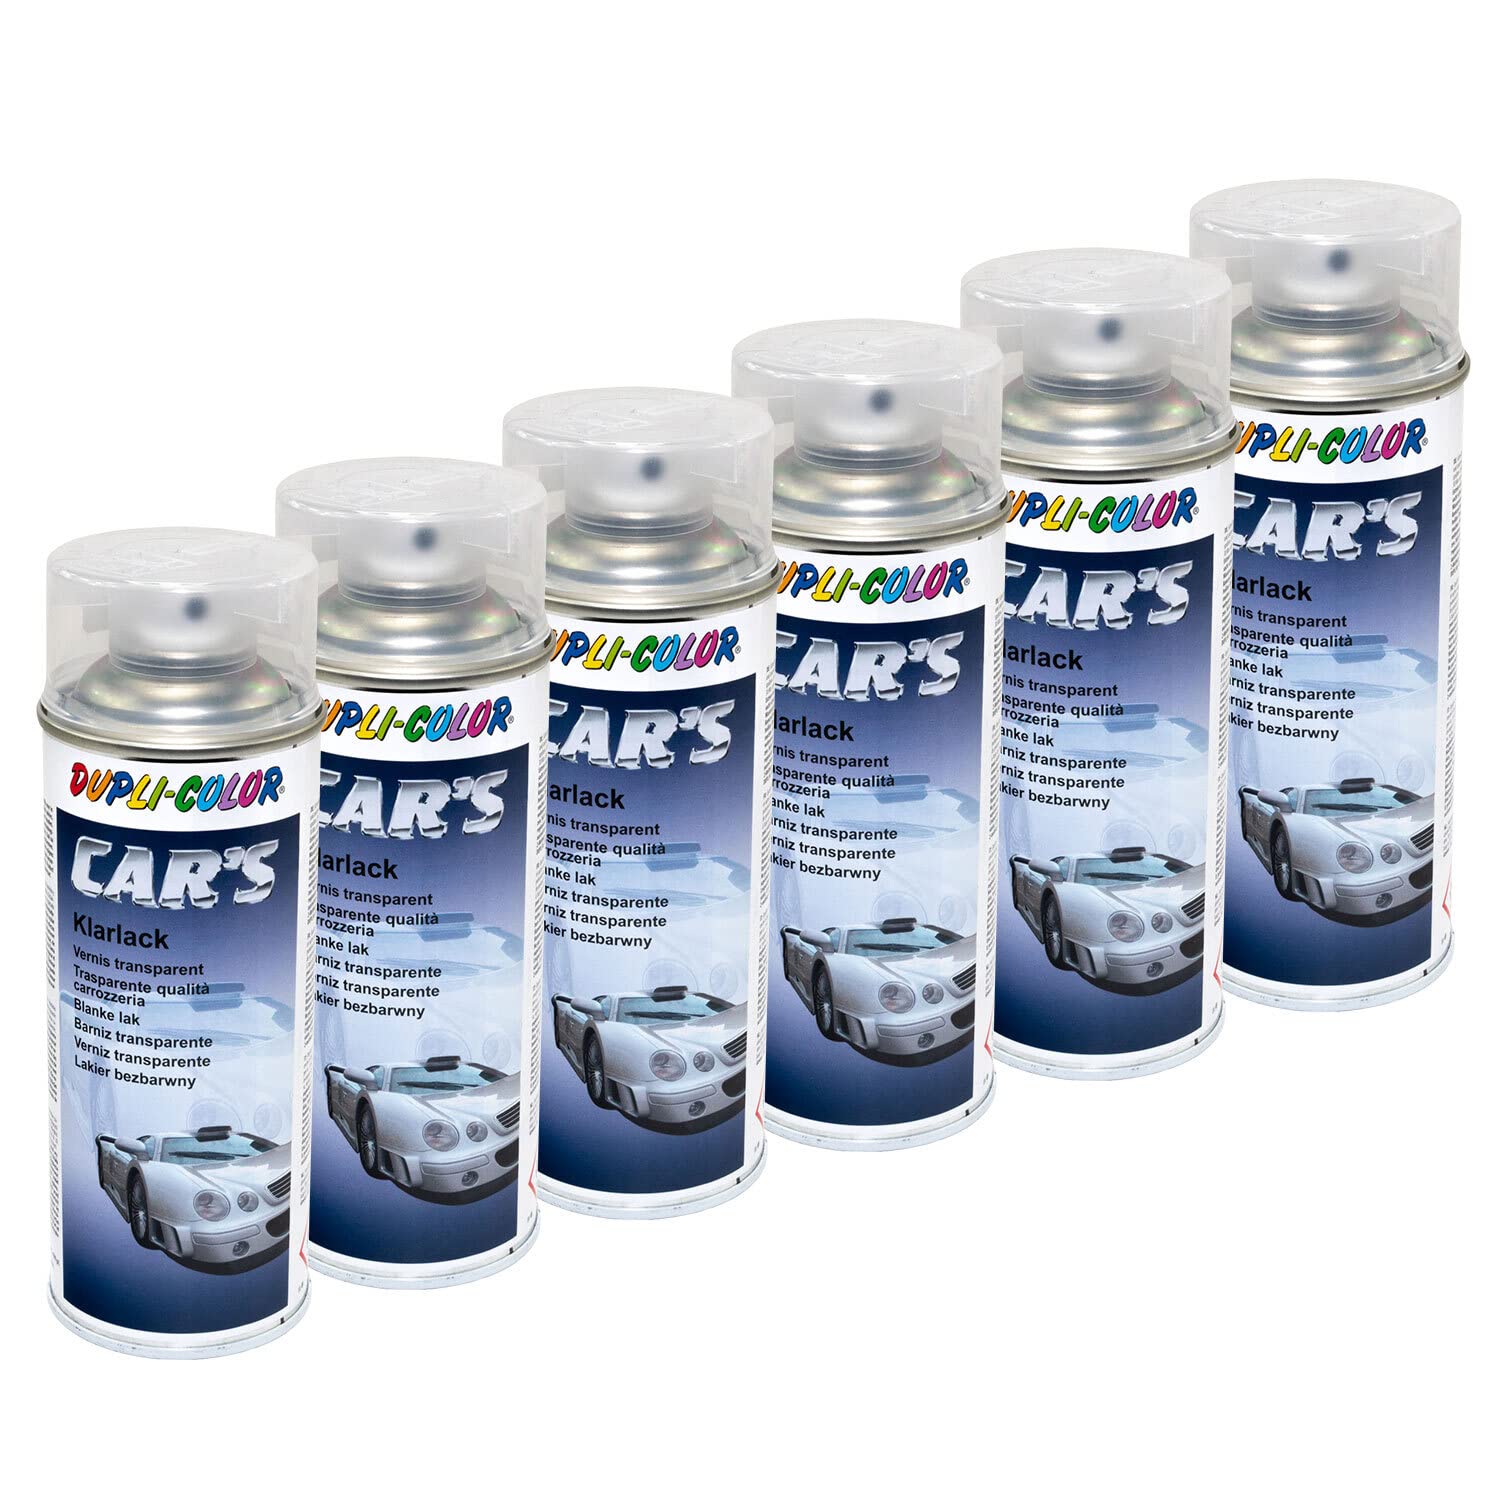 Klarlack Lack Spray Car's Dupli Color 385858 glänzend 6 X 400 ml